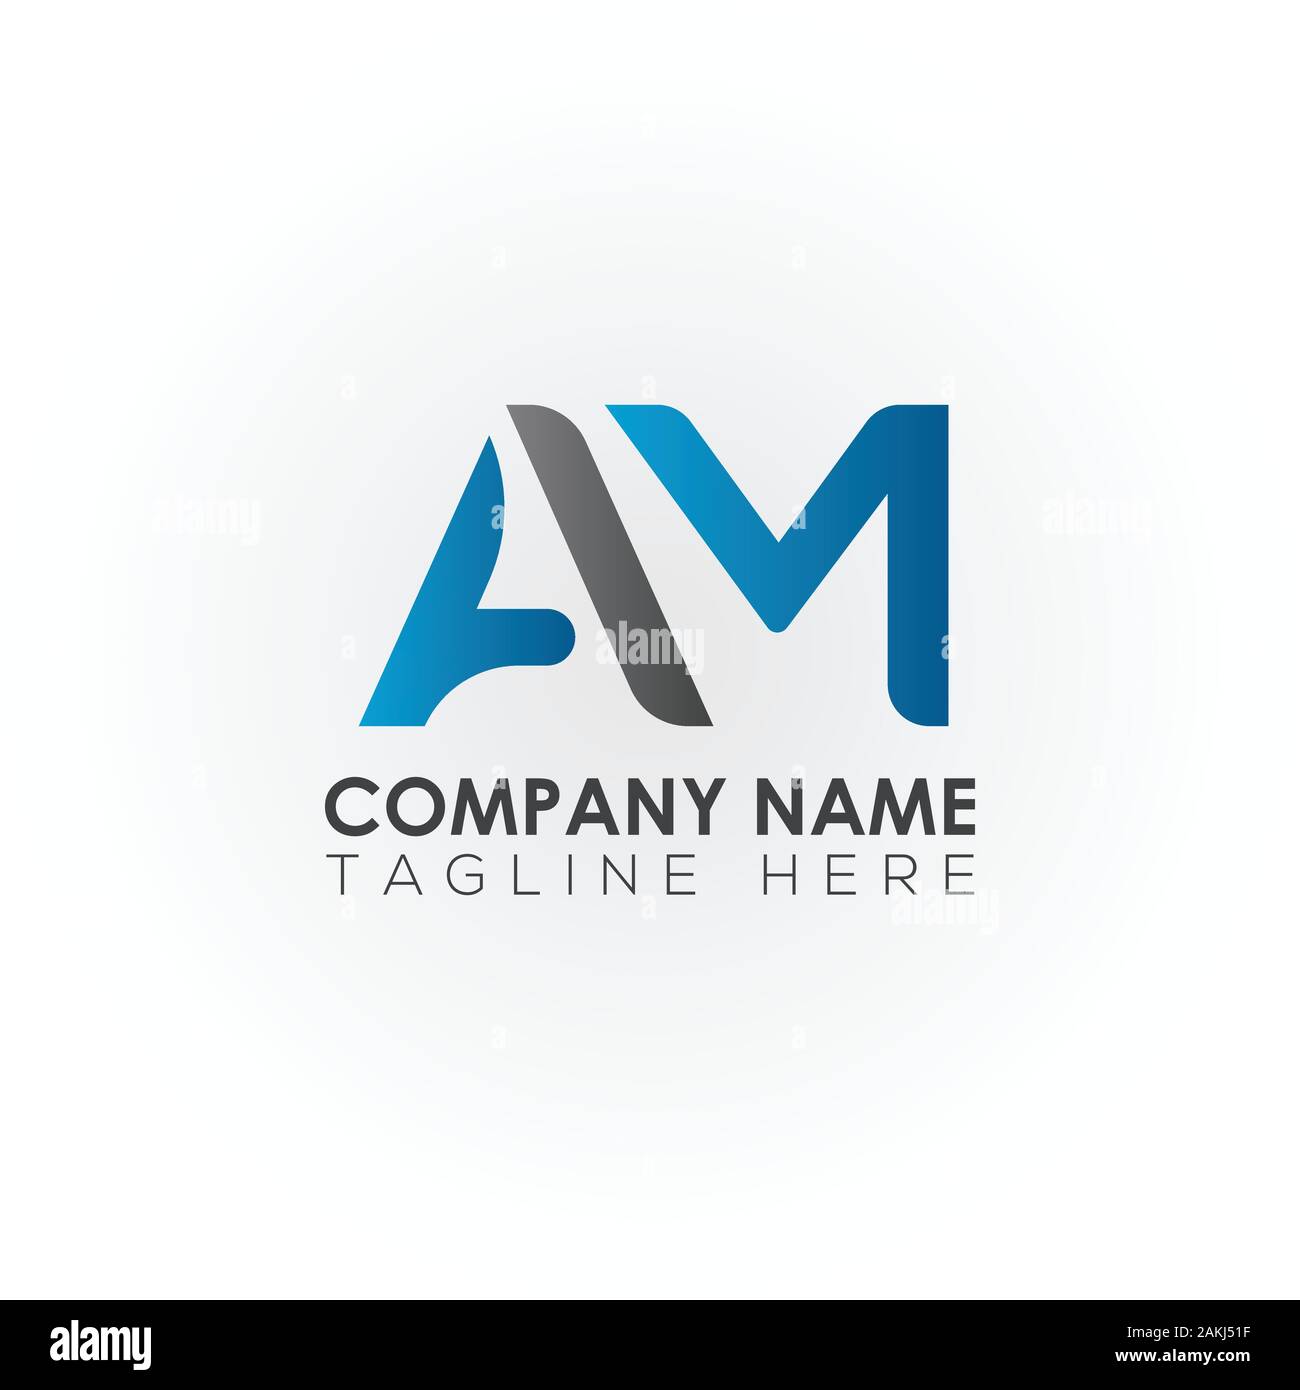 Premium Vector  Pm logo design vector illustration